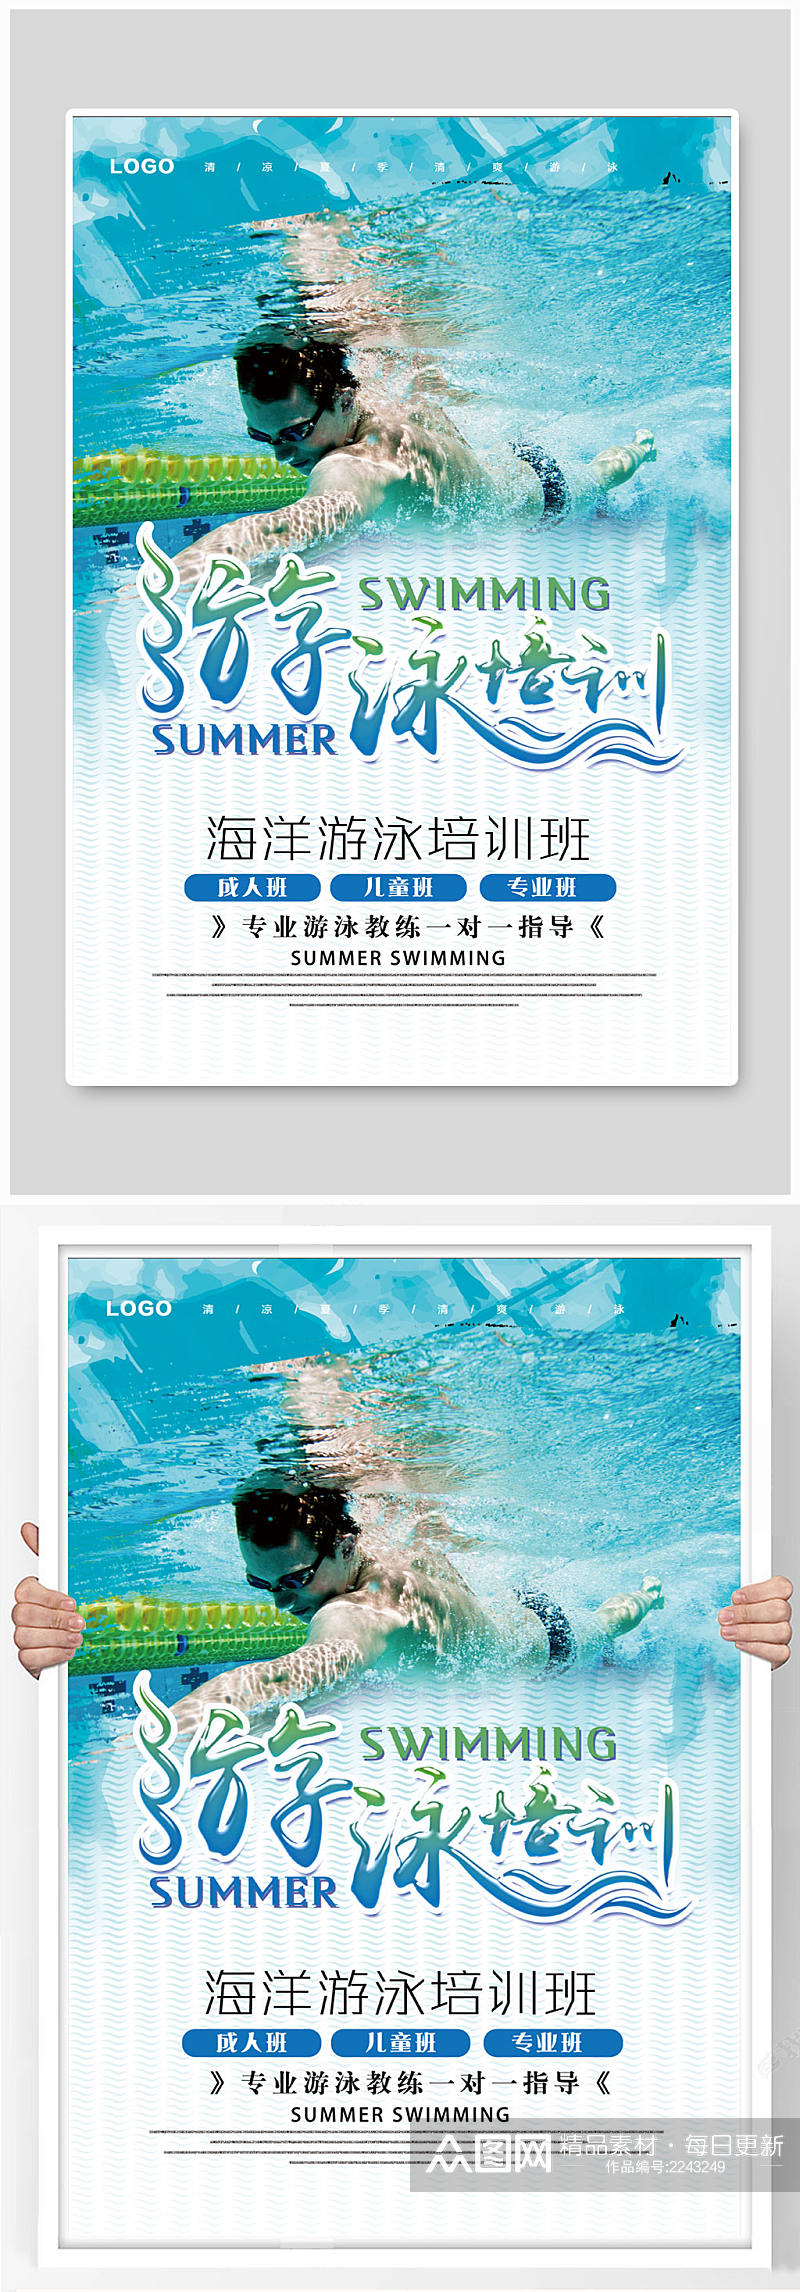 游泳培训海报游泳素材